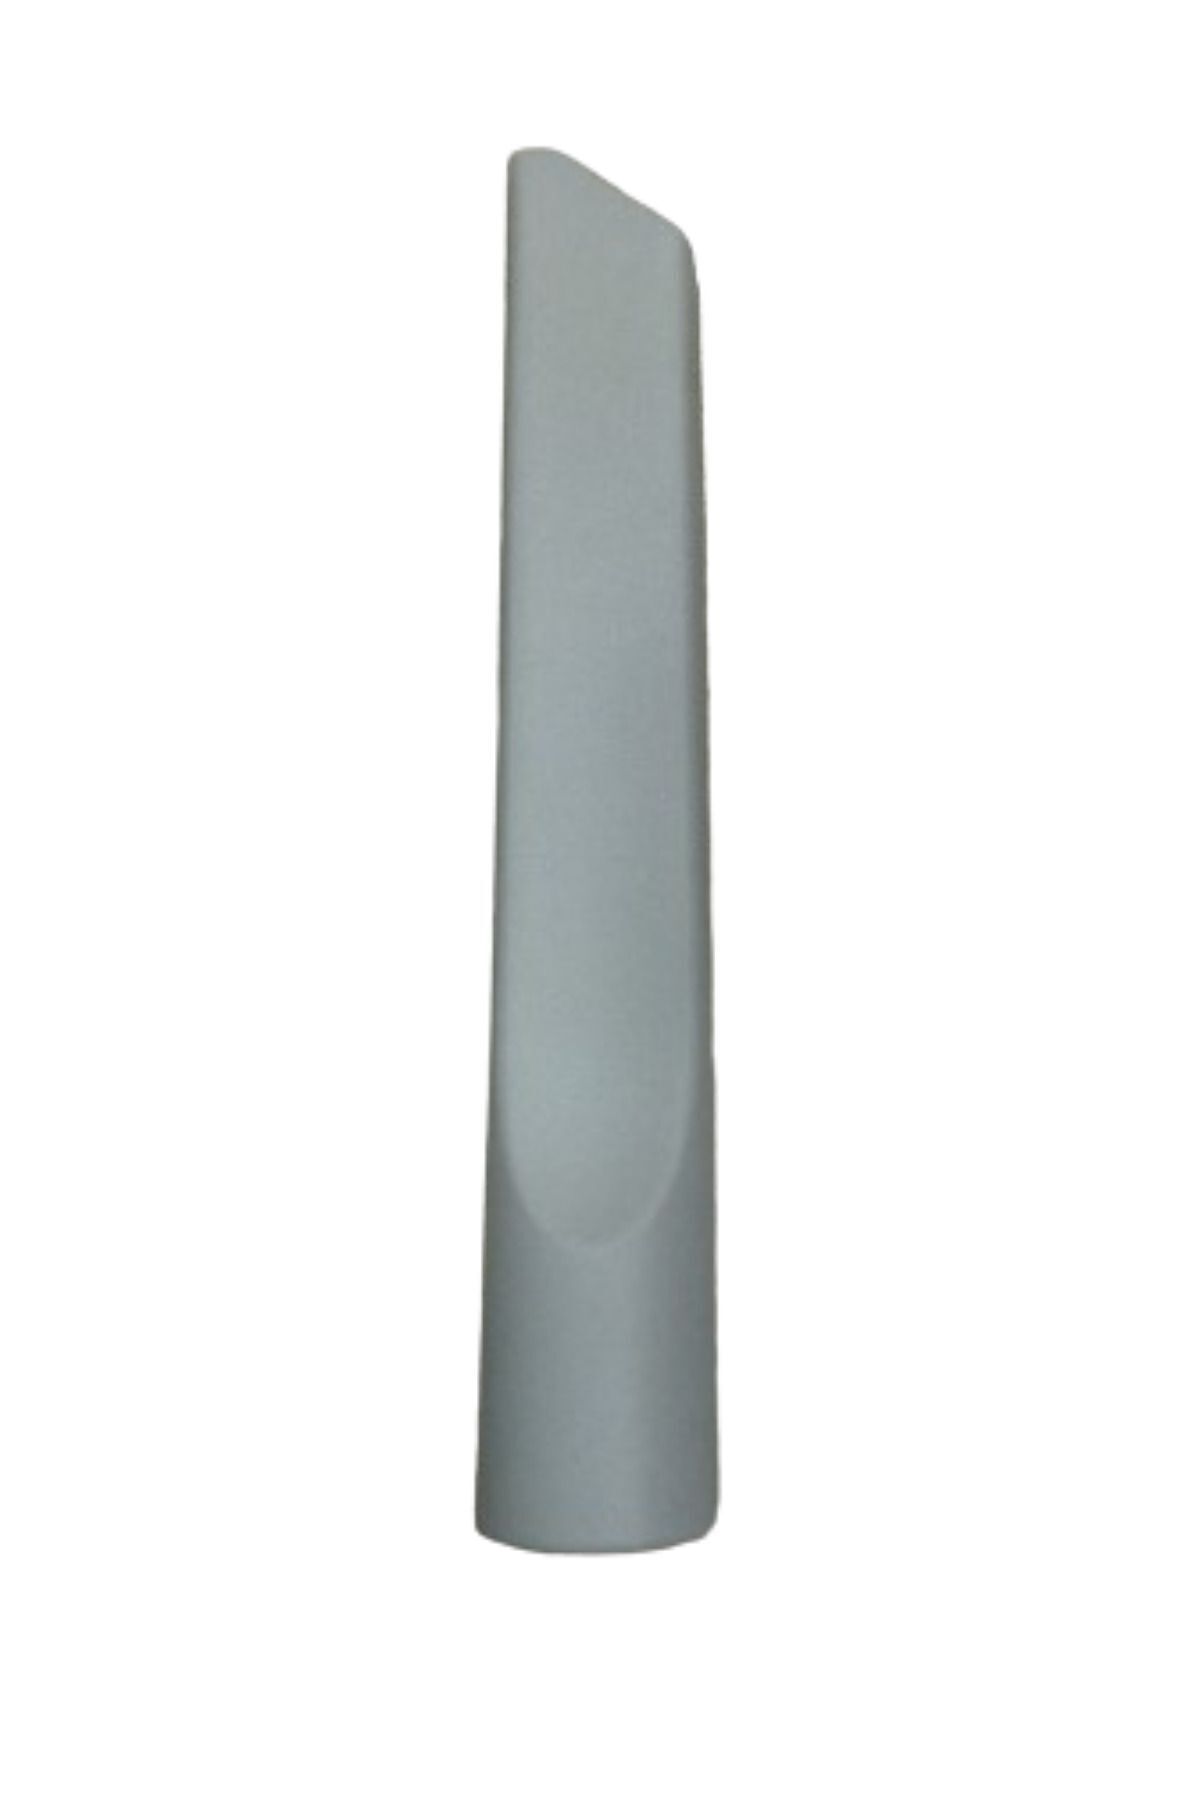 VESTEL Power Max 1801 Süpürge Koltuk Arası Düz Emici Başlık Gri Renk(22,5 cm)